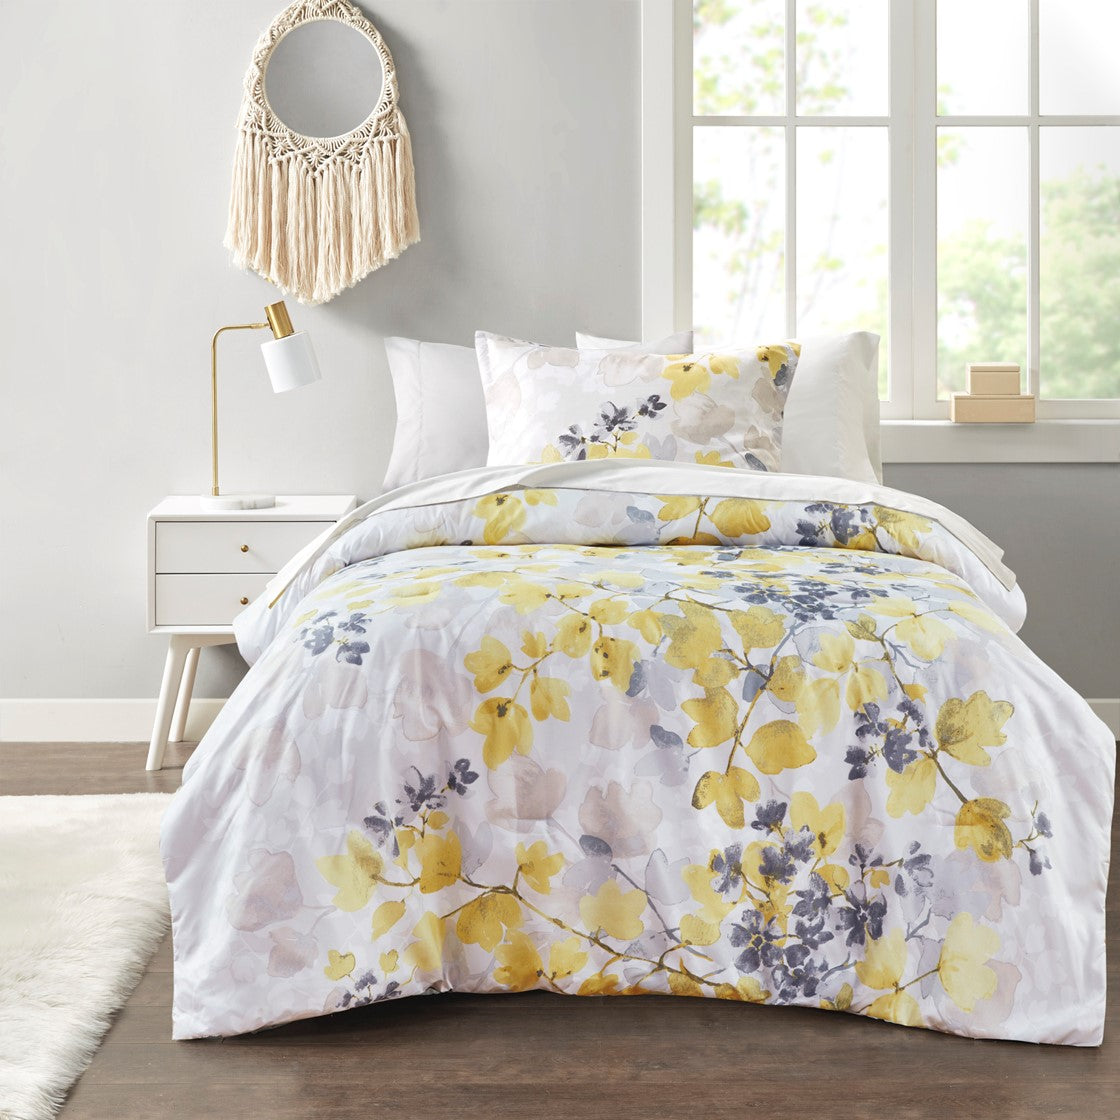 Floral Bedding Set Sale - Shop Online & Save On Top Rated Bedding Set Brands at ExpressHomeDirect.com